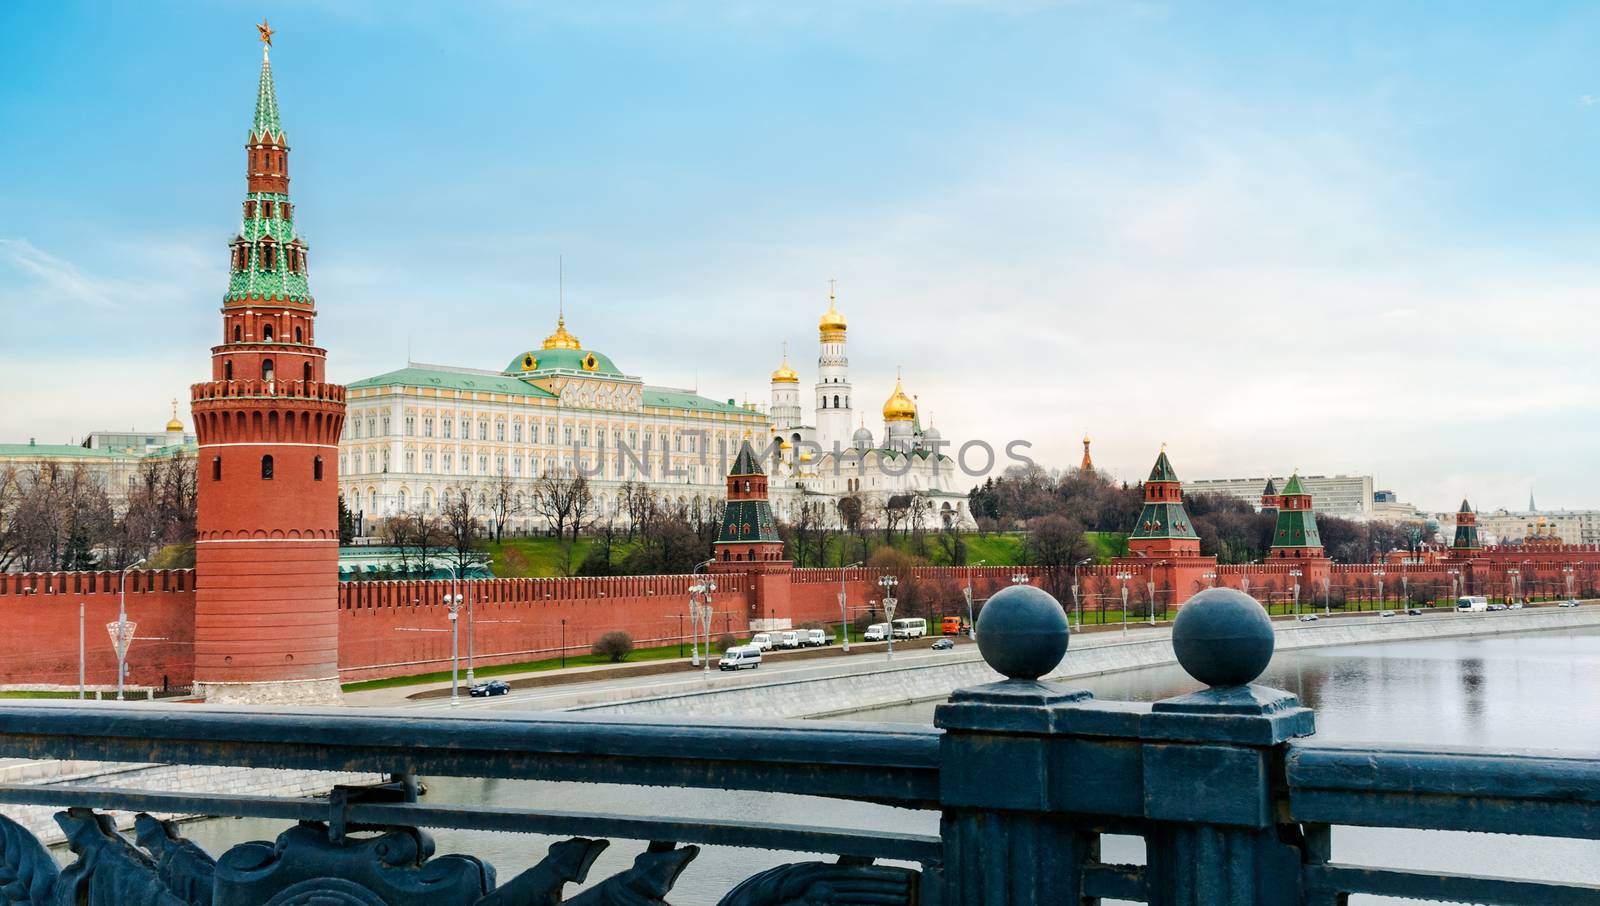 Moscow Kremlin by zeffss